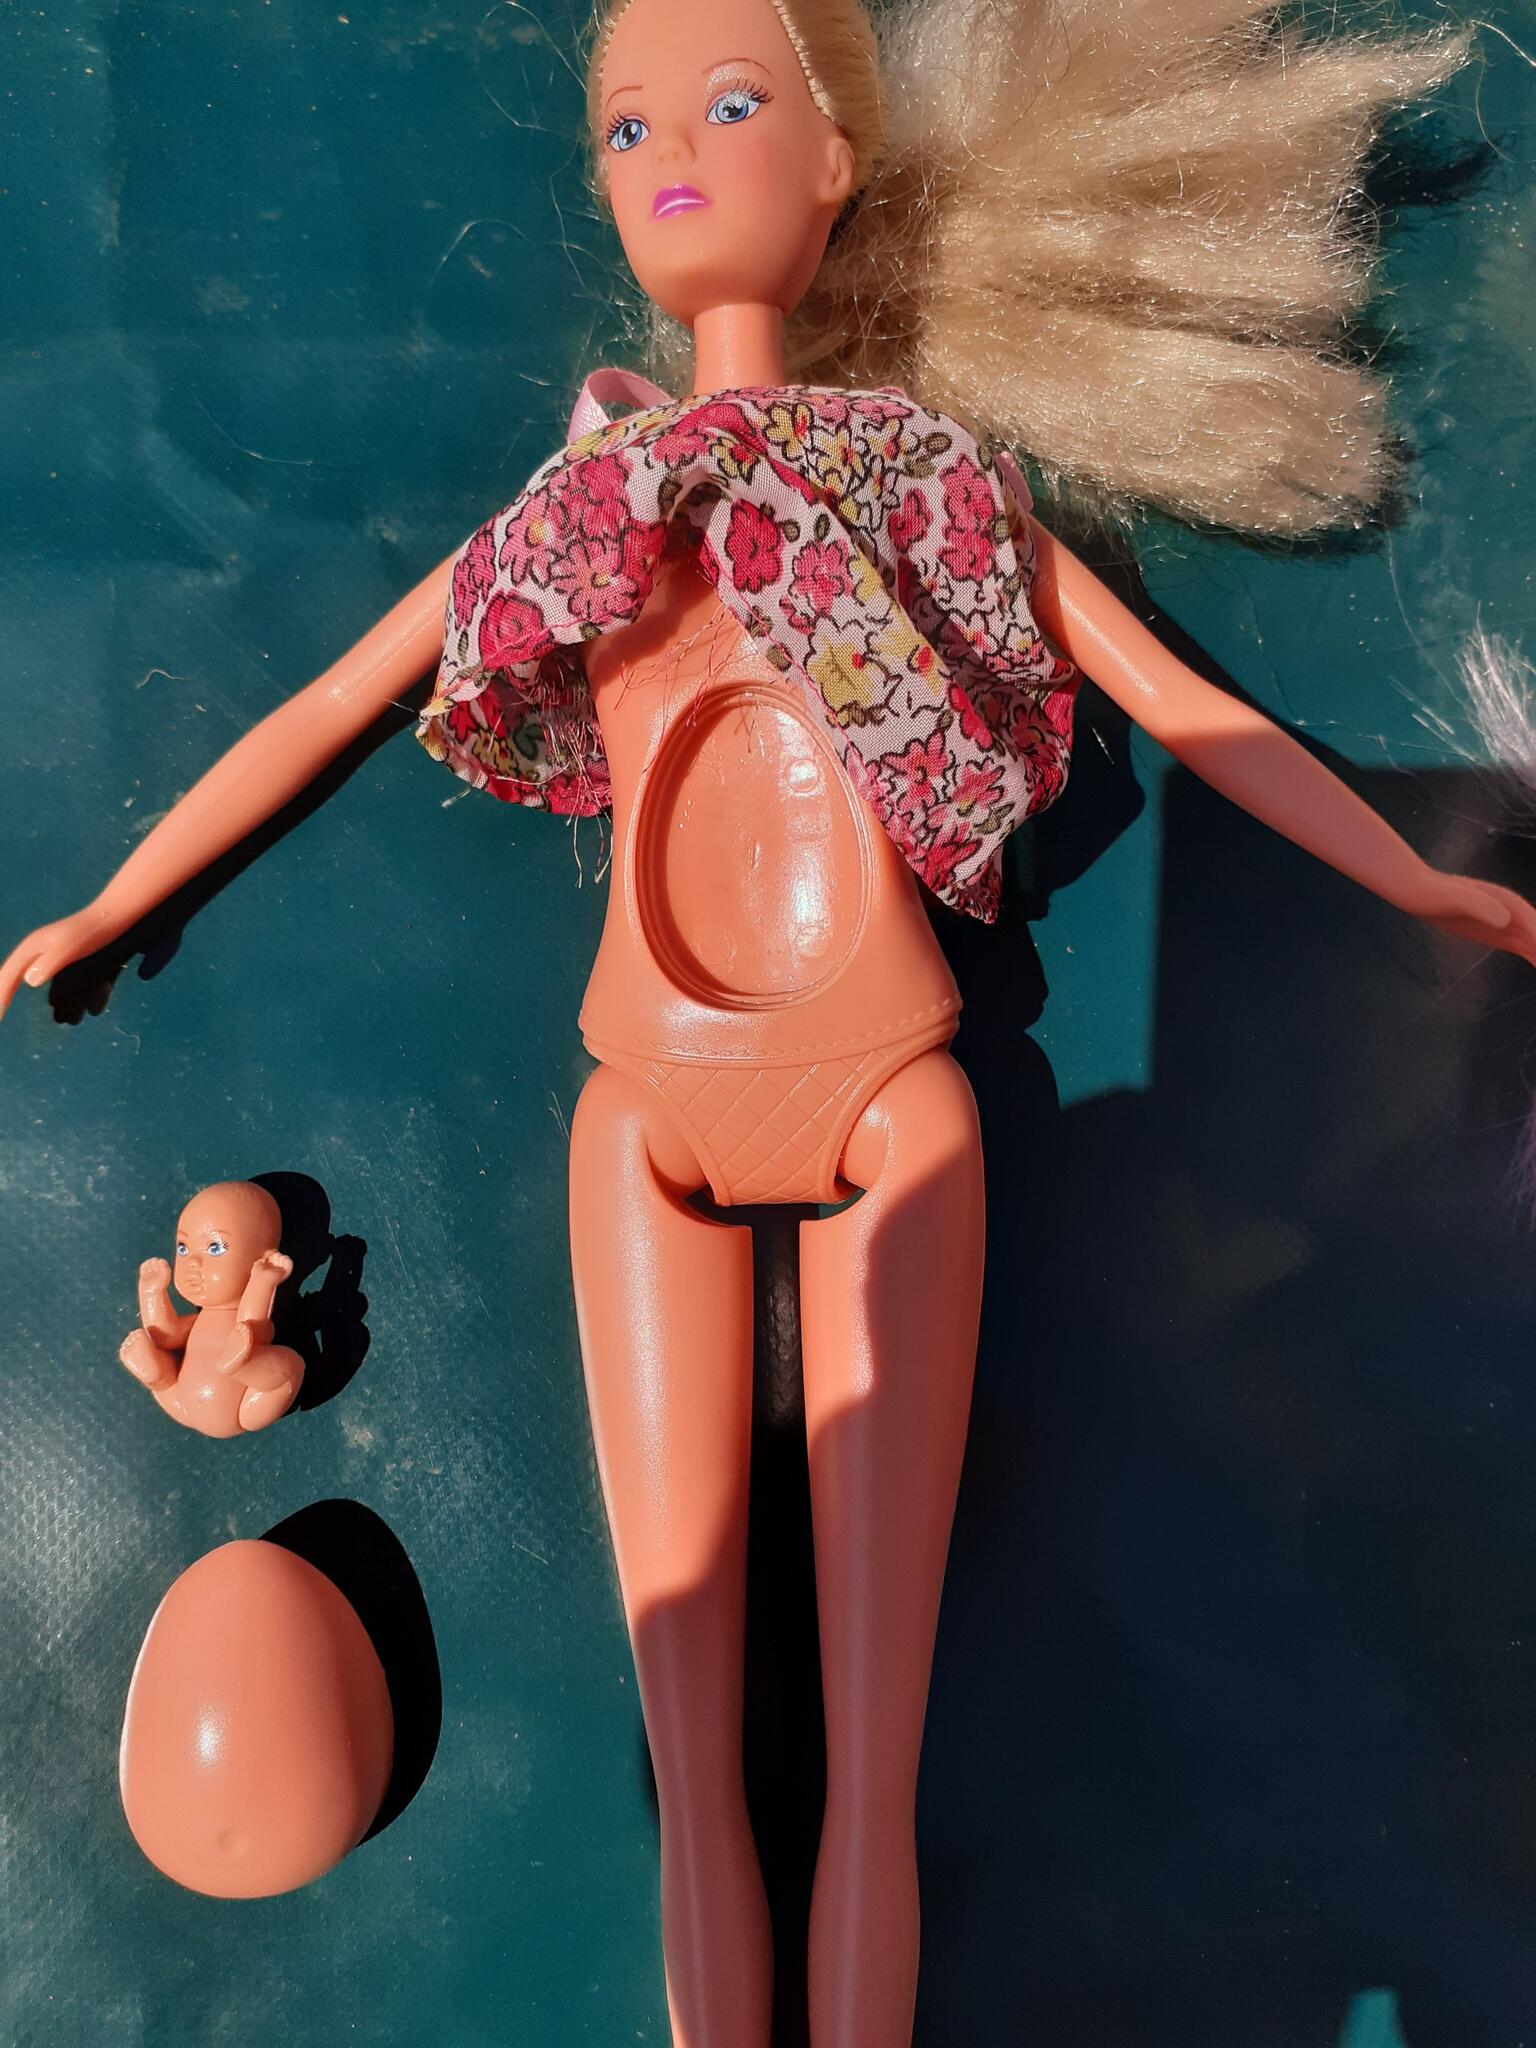 Afm logboek Gentleman vriendelijk Barbie Steffi Met Baby En Bolle En Platte Buik Voor 10 € In De Ronde Venen,  UT | Gratis/Te Koop — Nextdoor